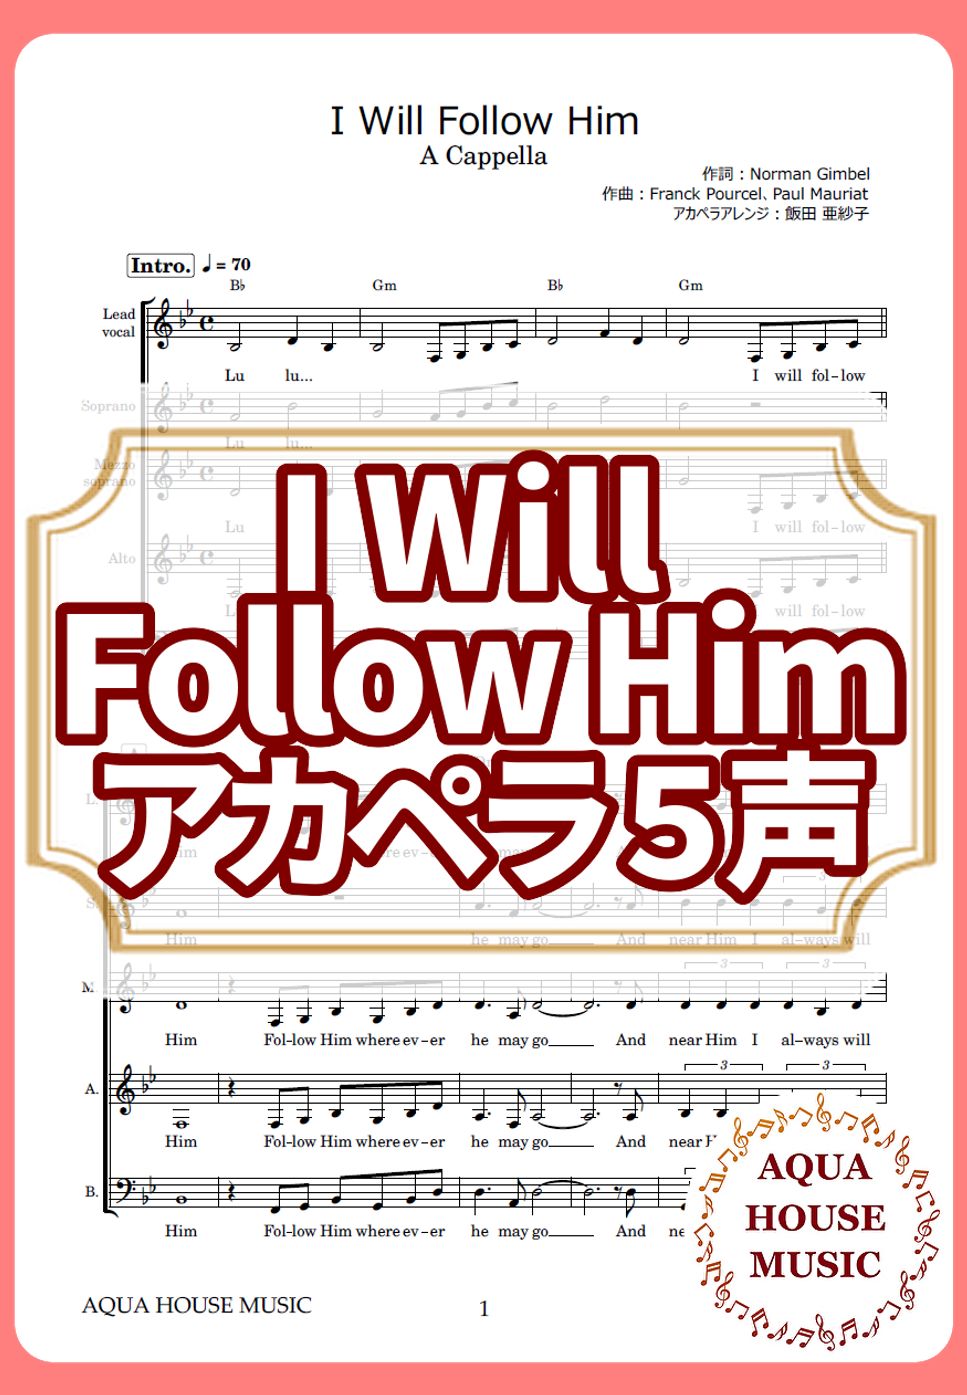 映画『天使にラブ・ソングを』 - I Will Follow Him (アカペラ楽譜♪５声ボイパなし) by 飯田 亜紗子